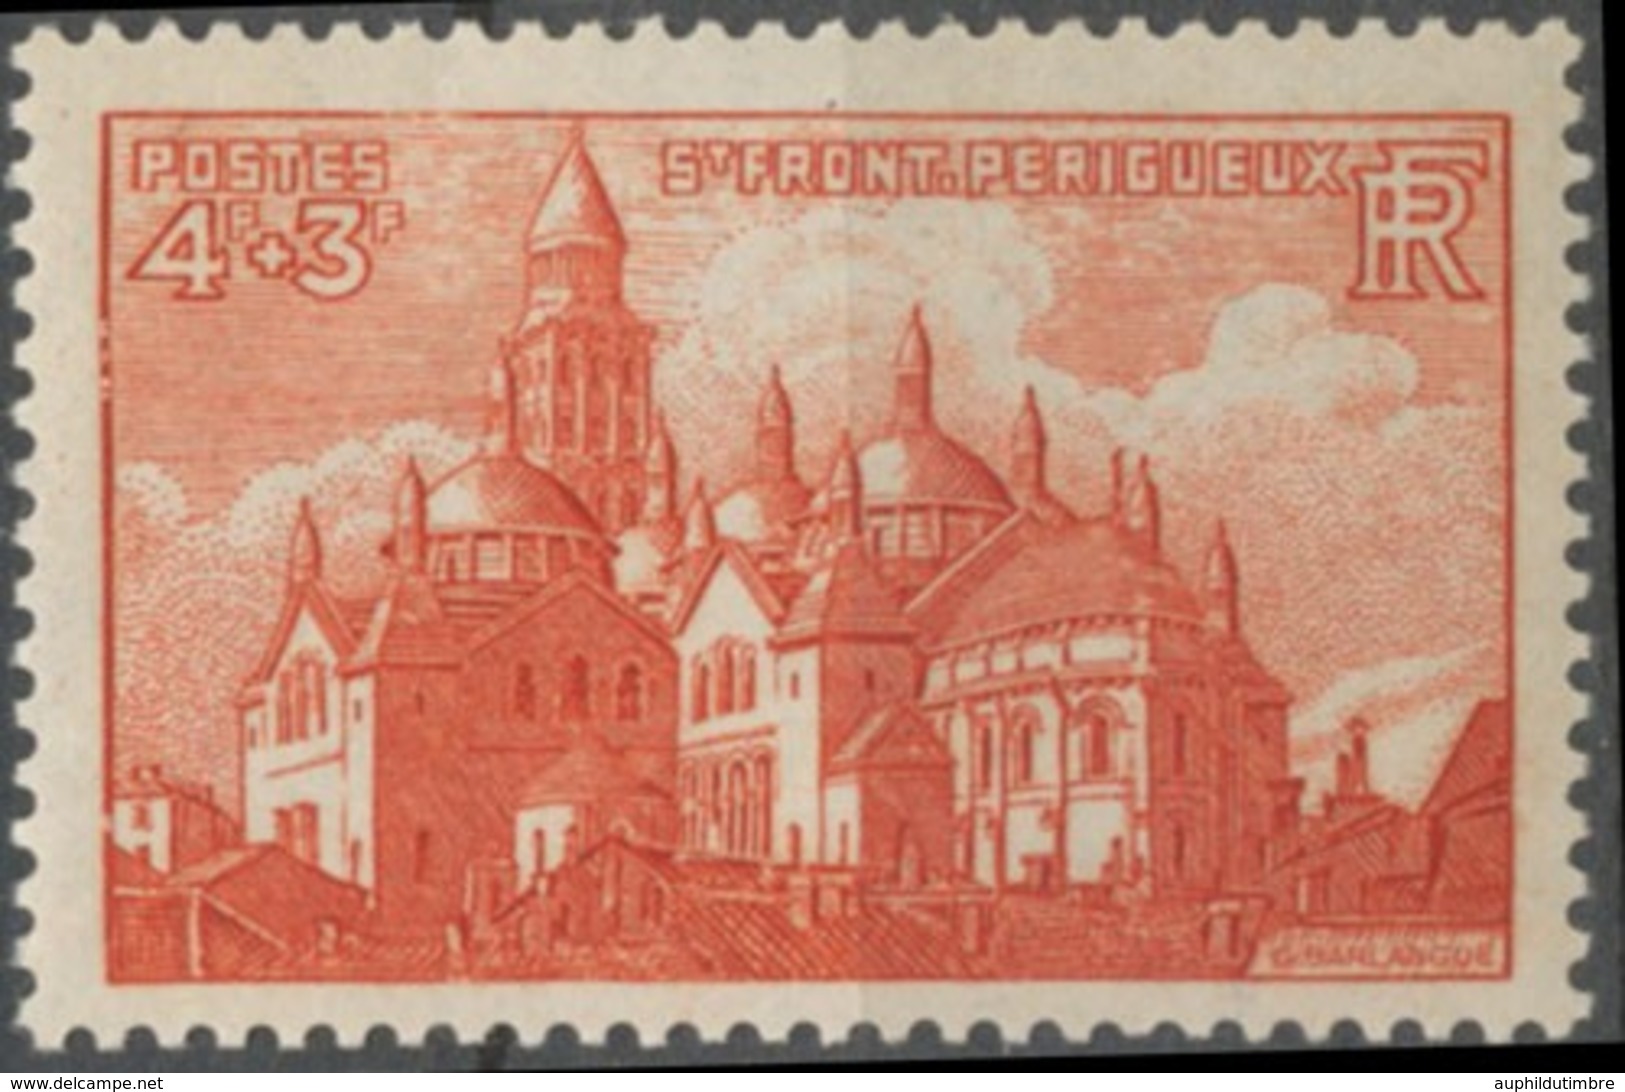 Cathédrales Et Basiliques. Saint-Front, De Périgueux 4f.+3f. Brun-rouge Neuf Luxe ** Y774 - Unused Stamps